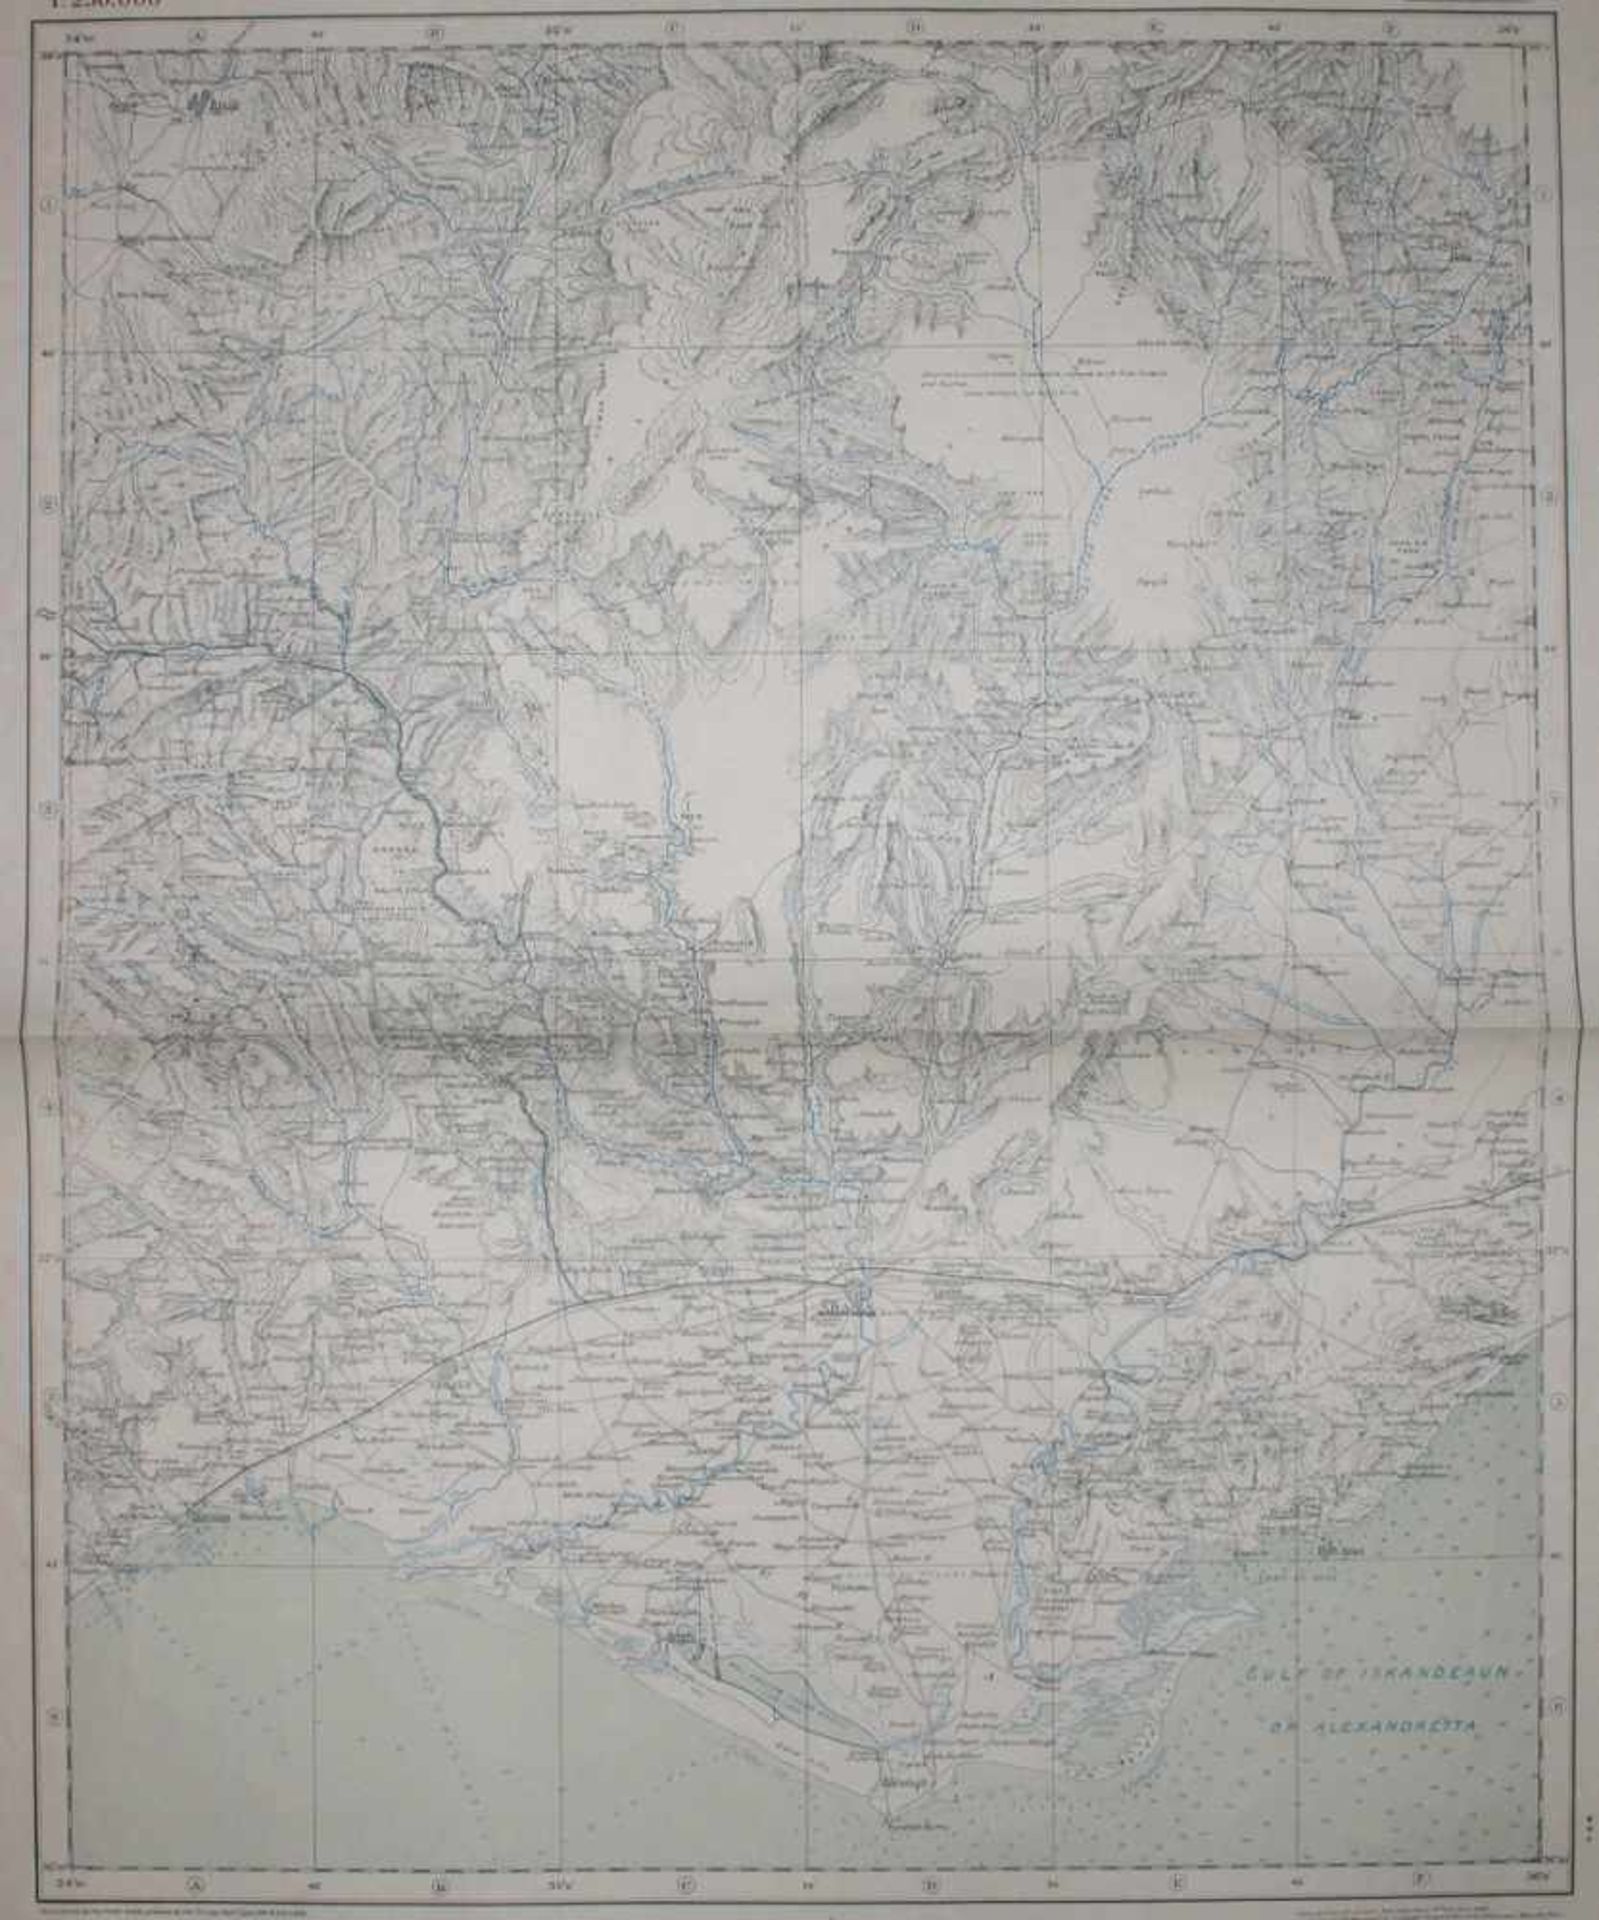 Türkei.Eastern Turkey in Asia. 20 (von ?) Karten-Bl. bei Service Geographique de l'Armee (Paris)